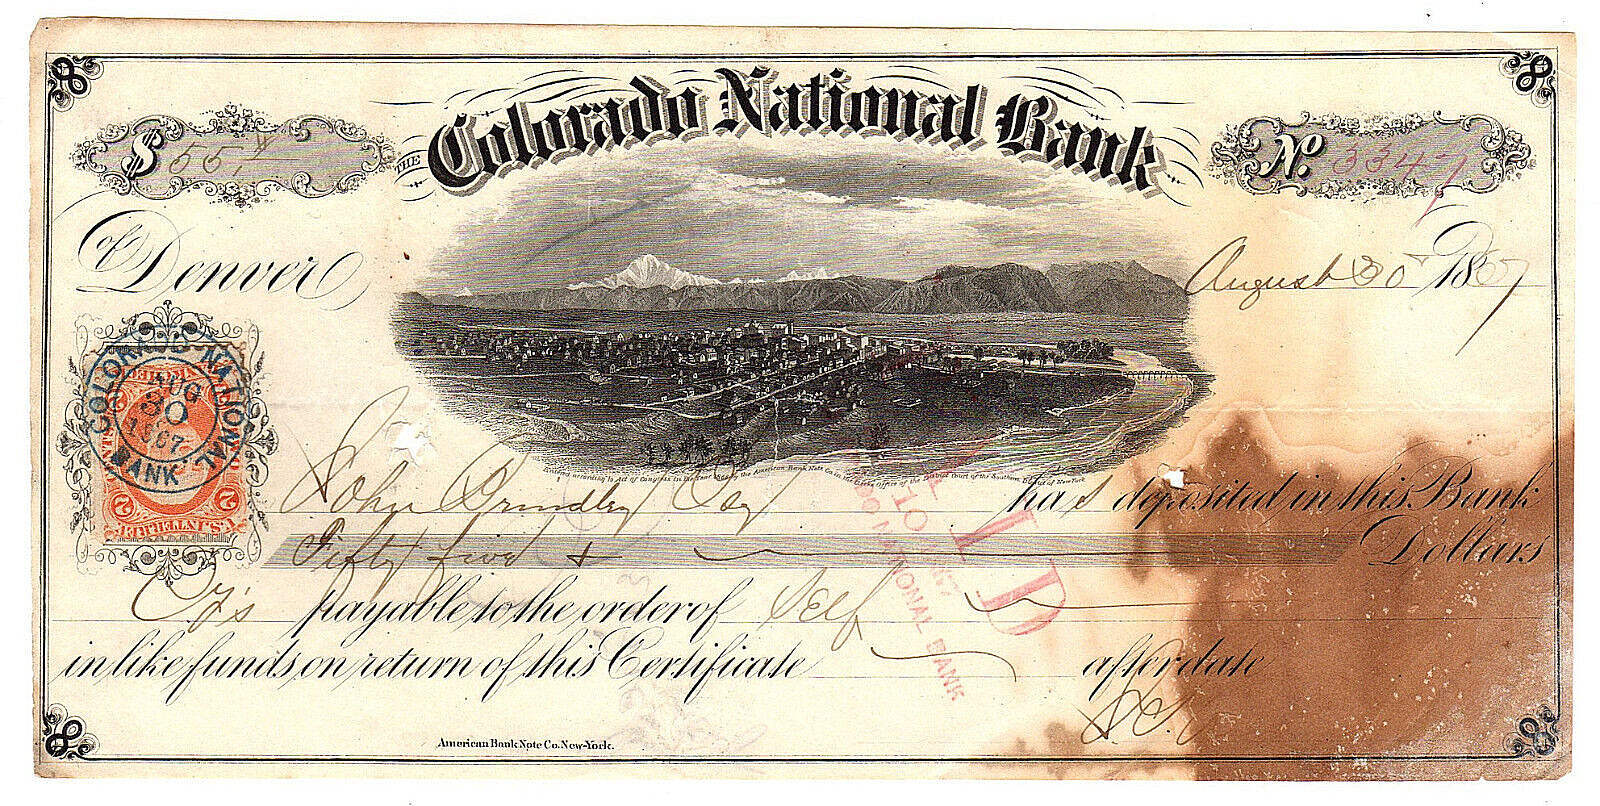 August 30, 1867 Denver Colorado National Bank Note, Ctf No. 3347, w/ R6C Revenue